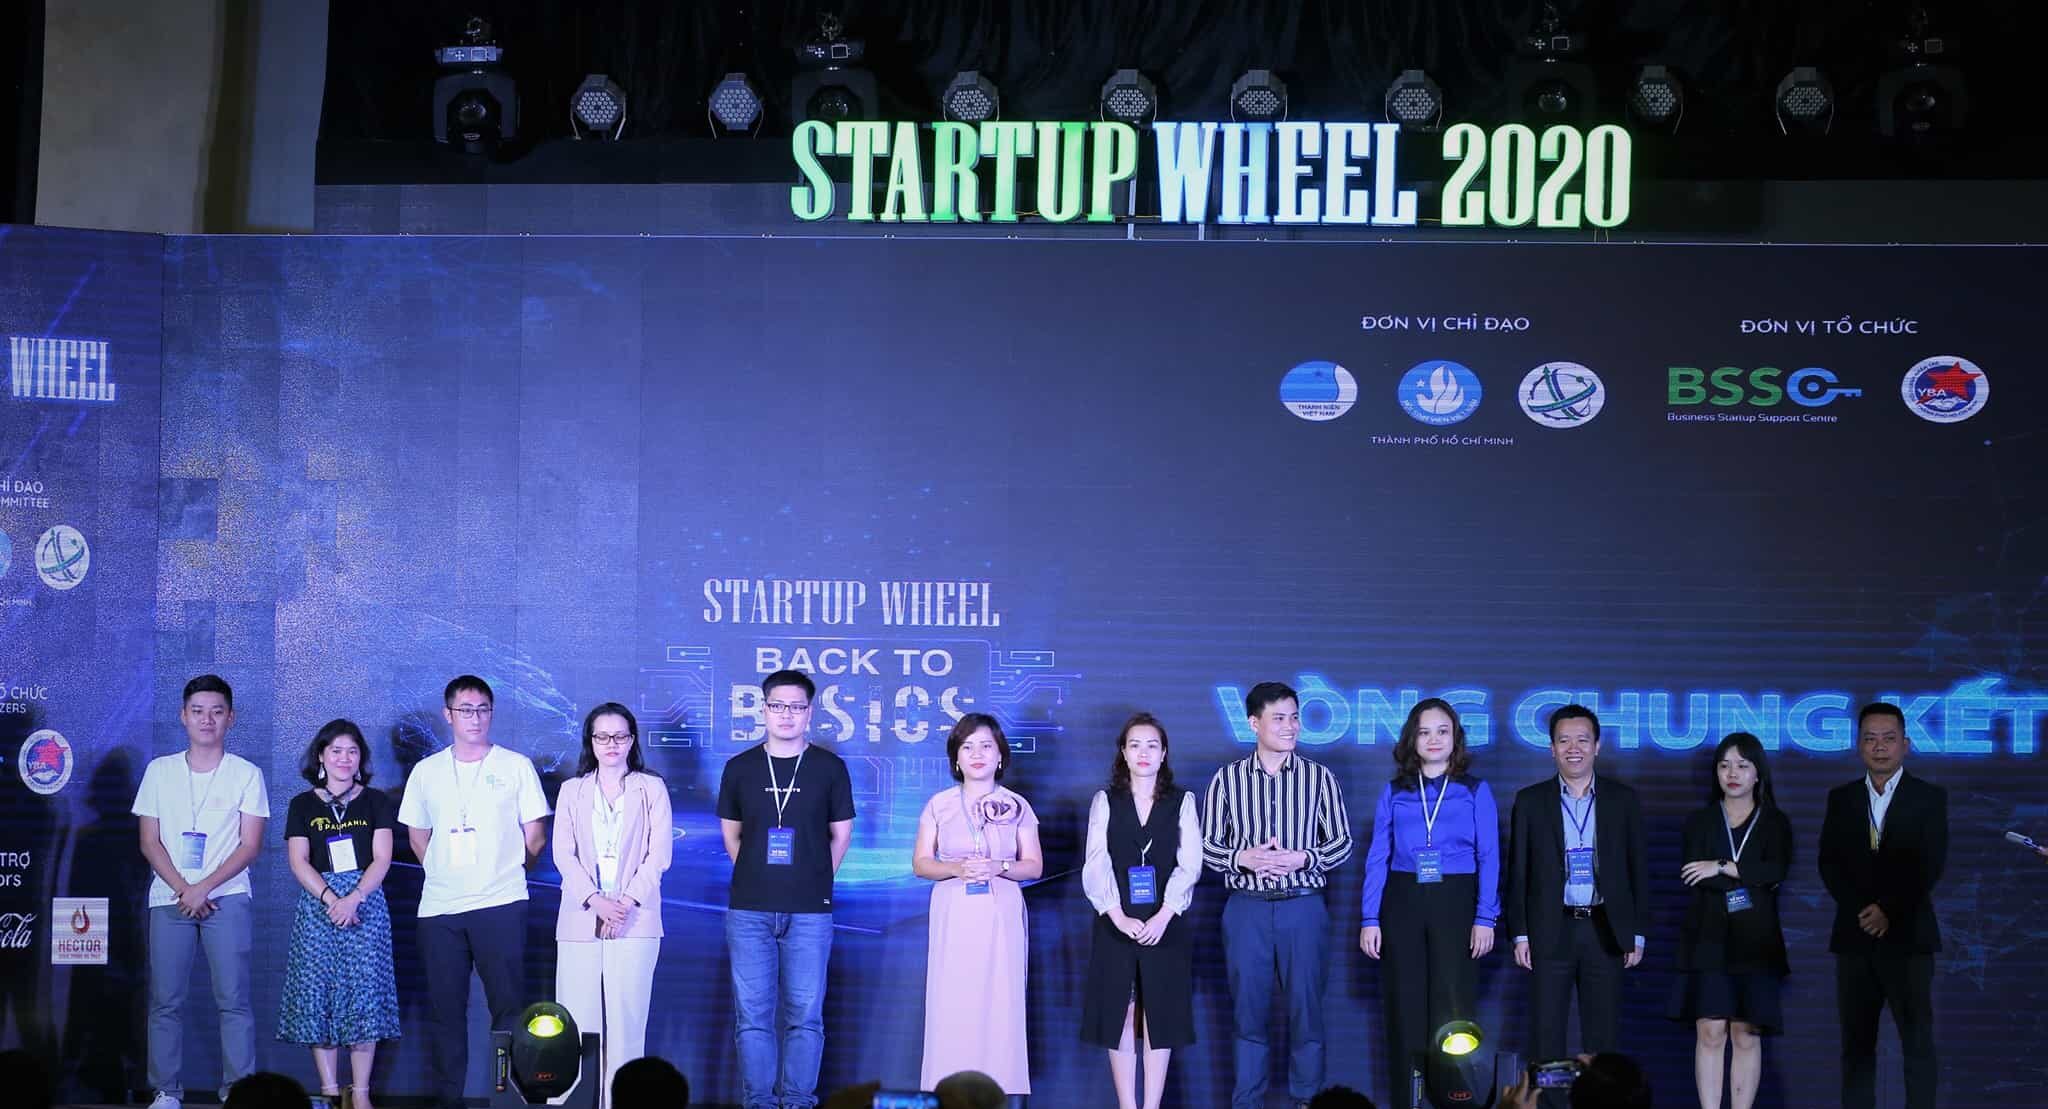 Tiến sĩ Nguyễn Thị Thu Trang là nữ Founder xuất sắc nhất Startup Wheel 2020 với dự án Vbee Smart Dialog 49